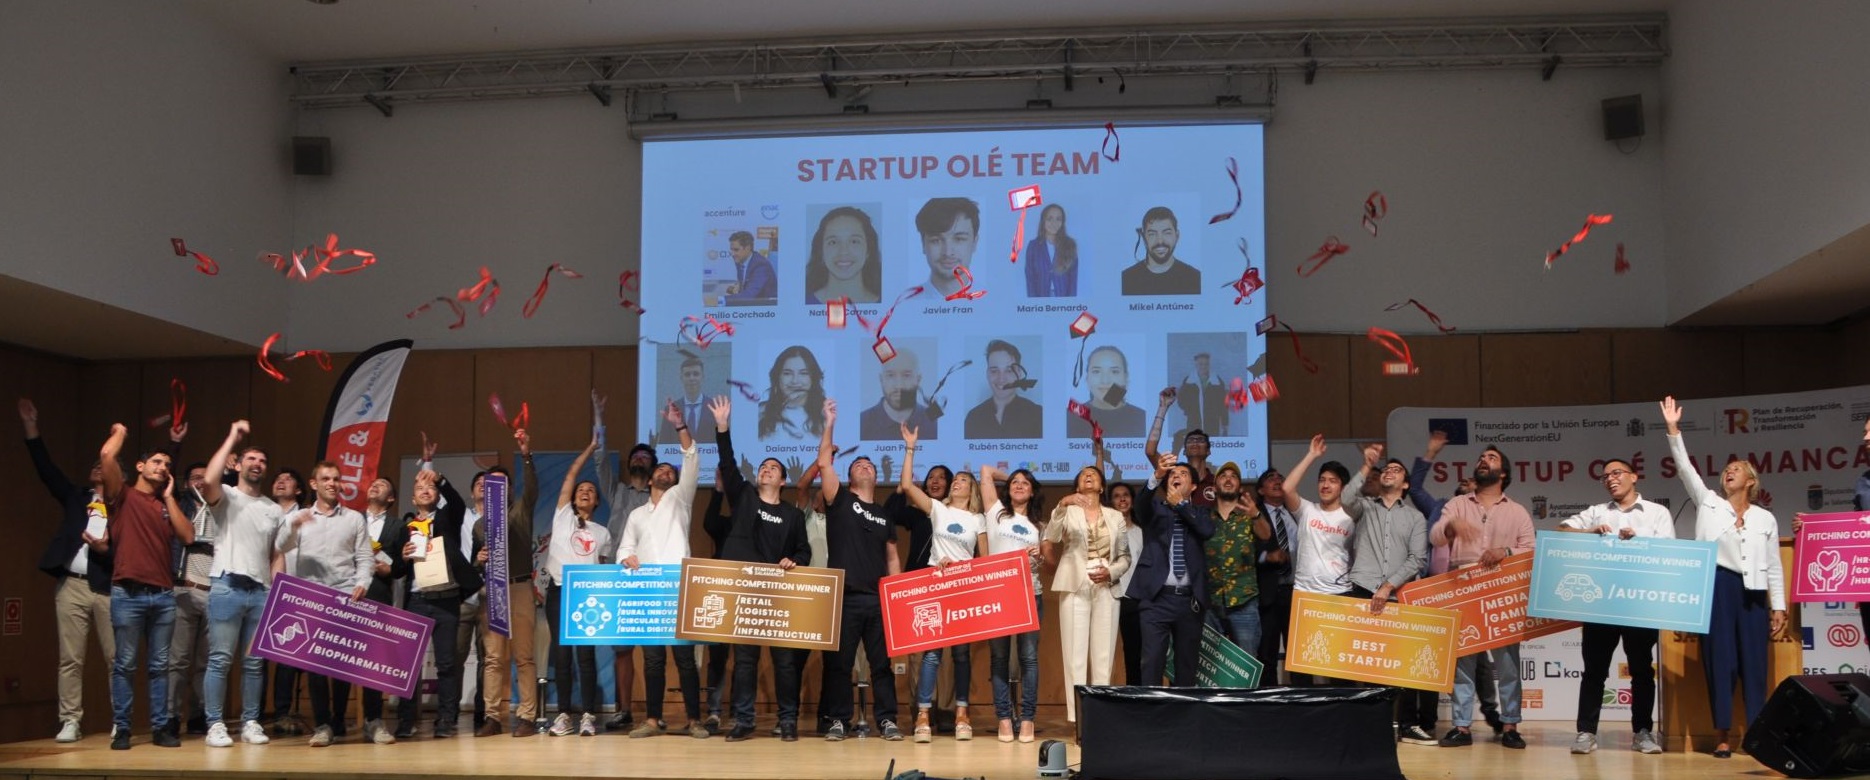 Startup Olé echa el cierre en Salamanca con récord de participantes